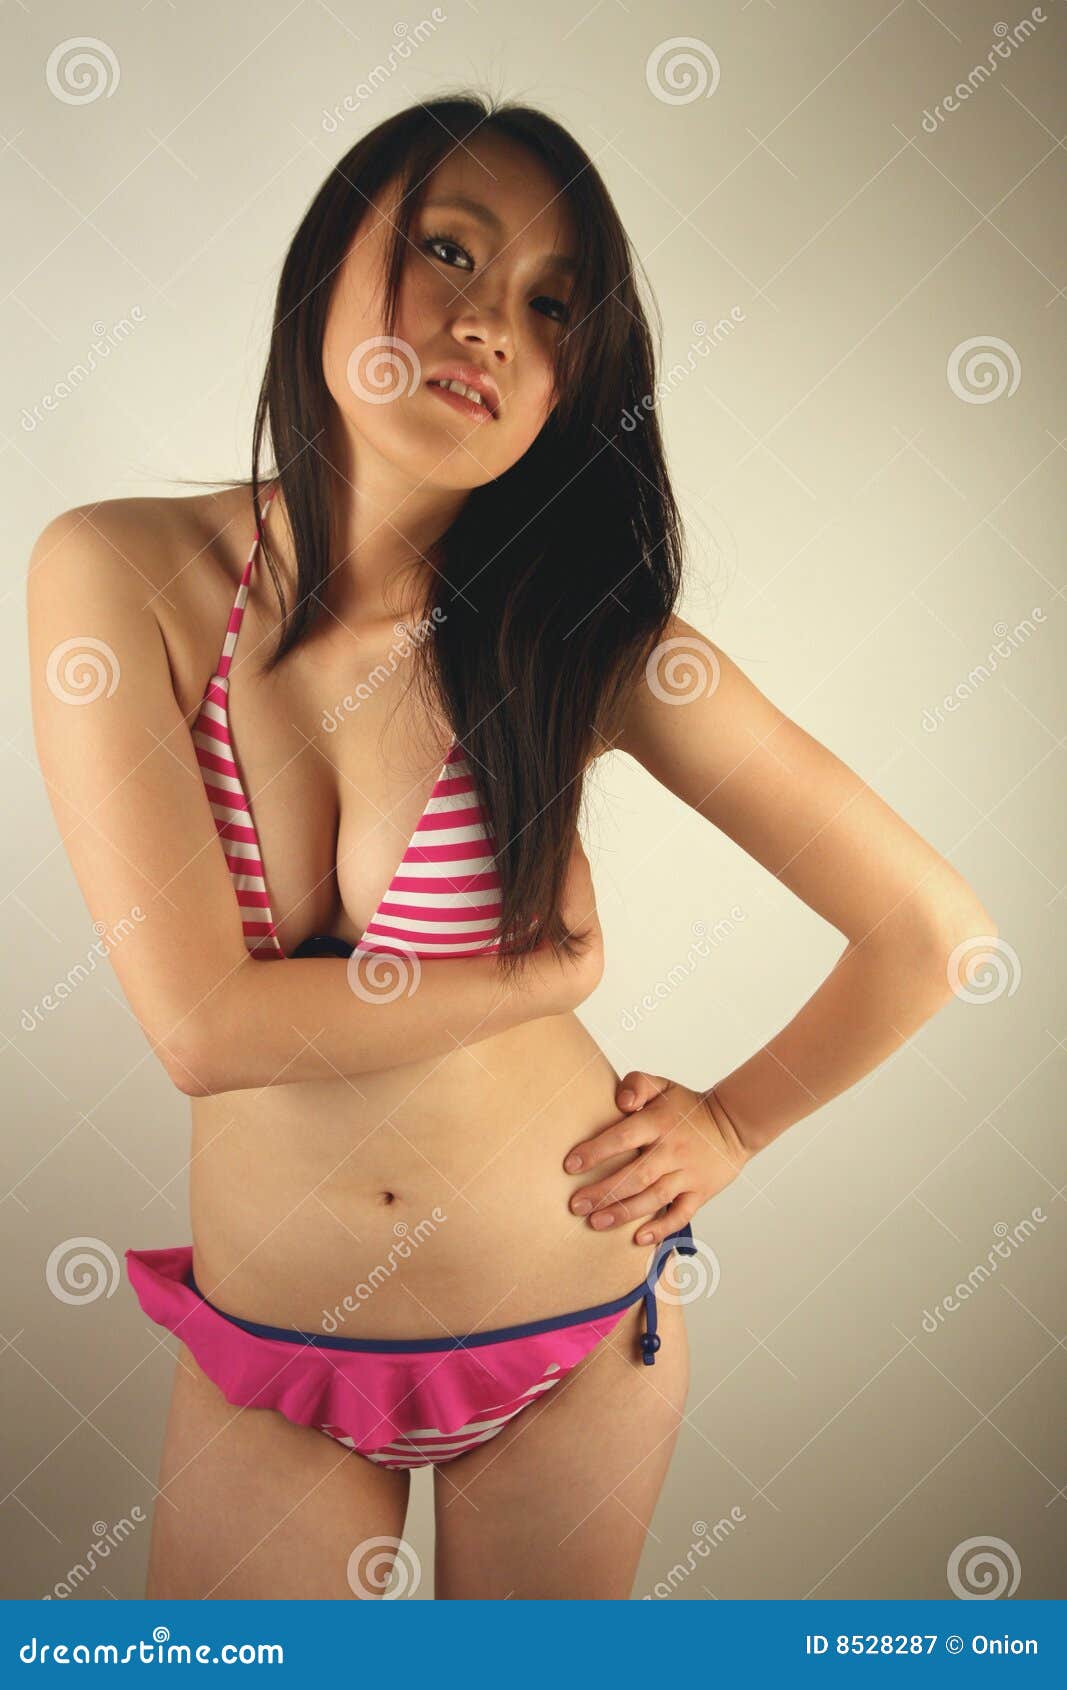 Chinese Hot Cute Teen - Beautiful Asian Girl in a Bikini Stock Image - Image of bikini, female:  8528287